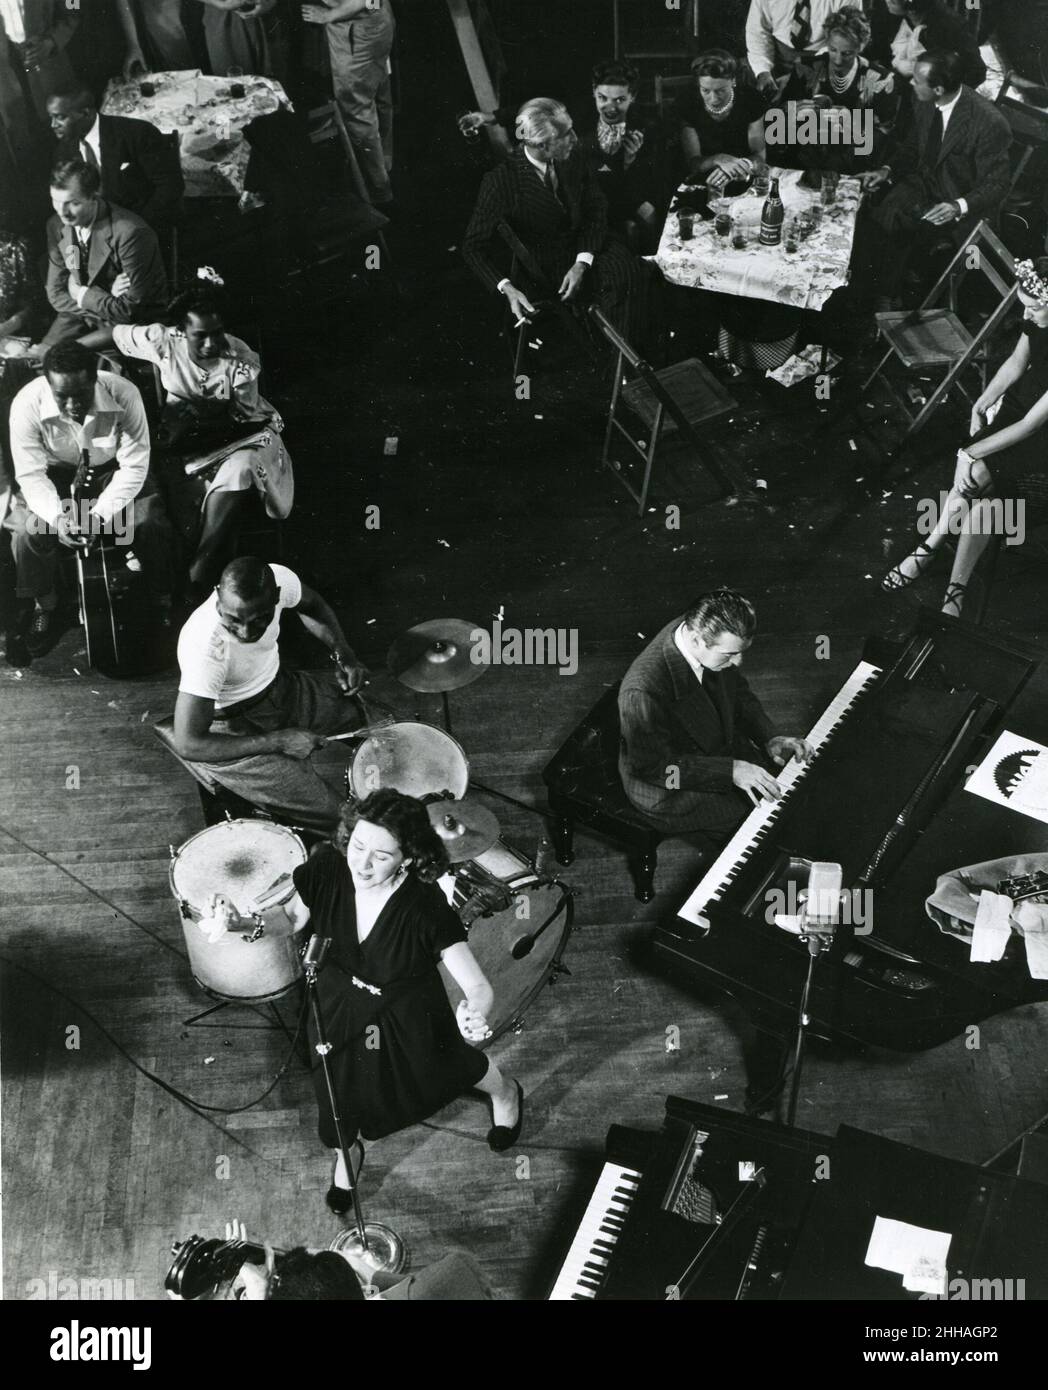 New York, um 1945 - Lee Wiley singt 'Sugar', einen Jazz-Standard, den sie für das Commodore-Label in der Innenstadt von Cafe Society aufgenommen hat. Jess Stacy, ihr Mann ist am Klavier, 'Cozy' Cole am Schlagzeug und Sid Weiss am Bass. Stockfoto